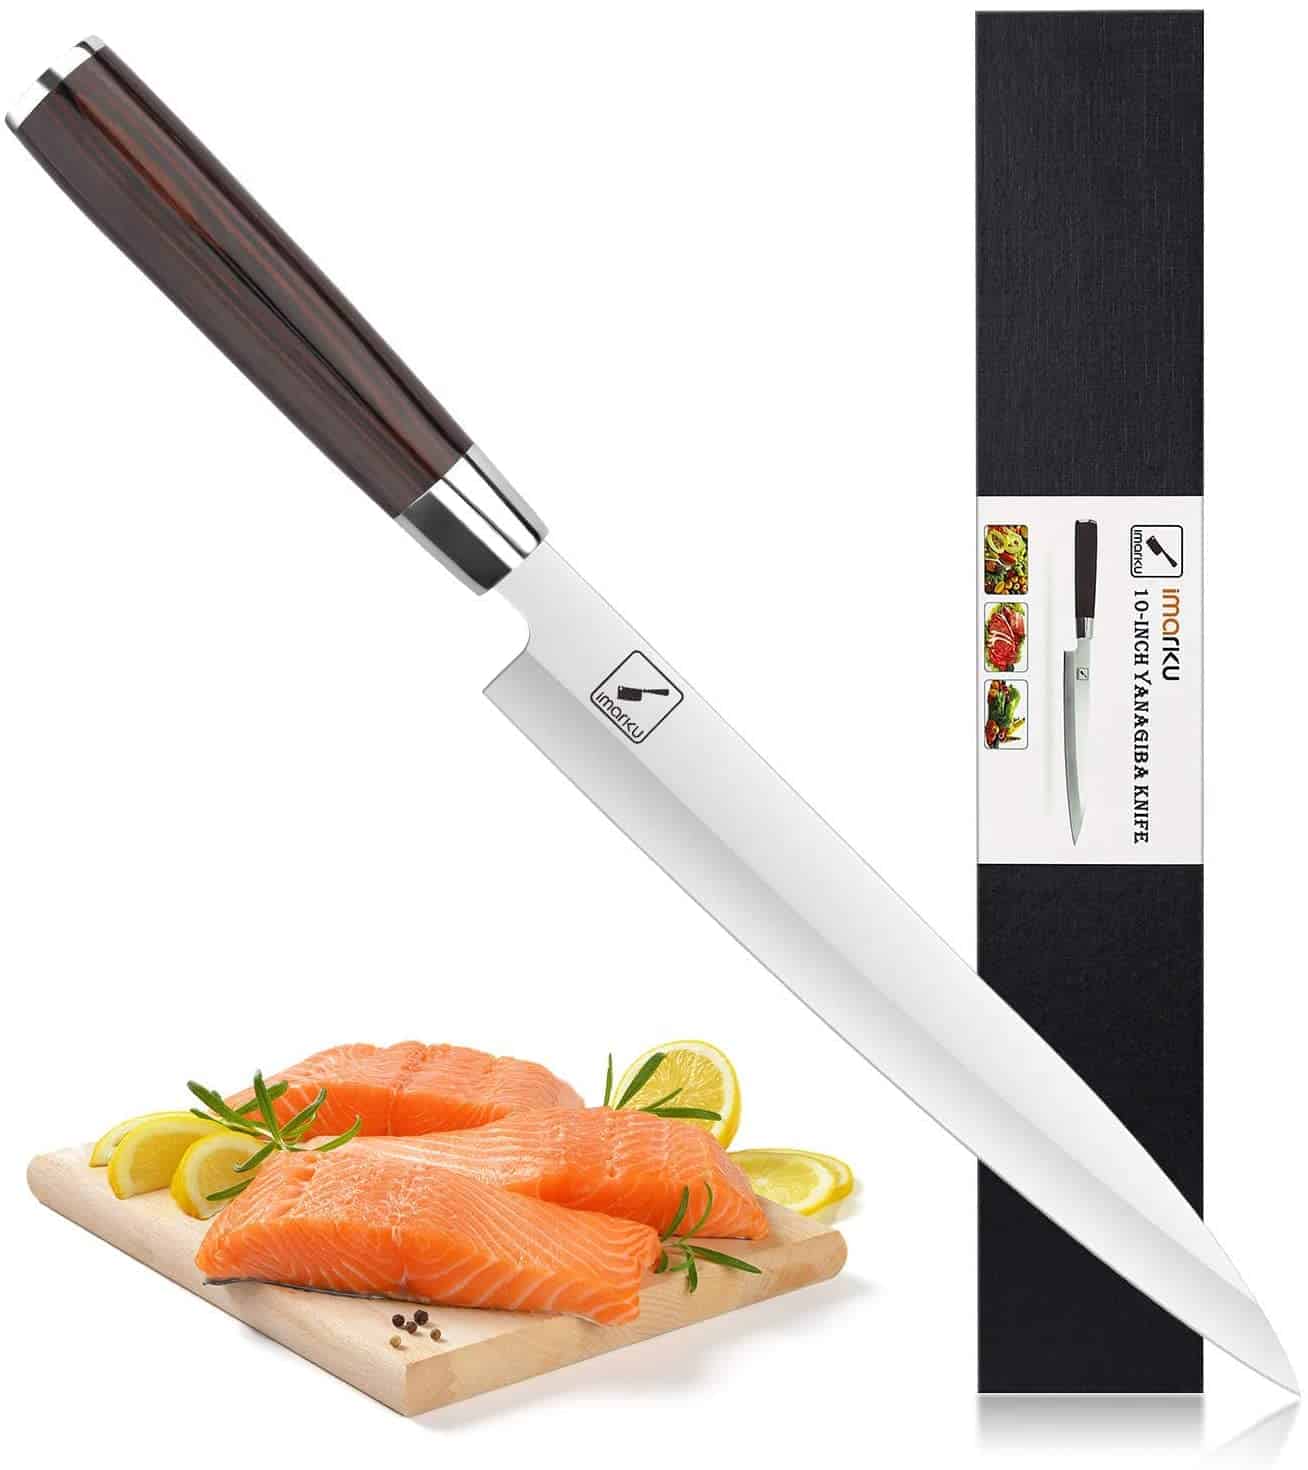 Best overall yanagiba knife- Imarku Professional Single Bevel Sushi Knife